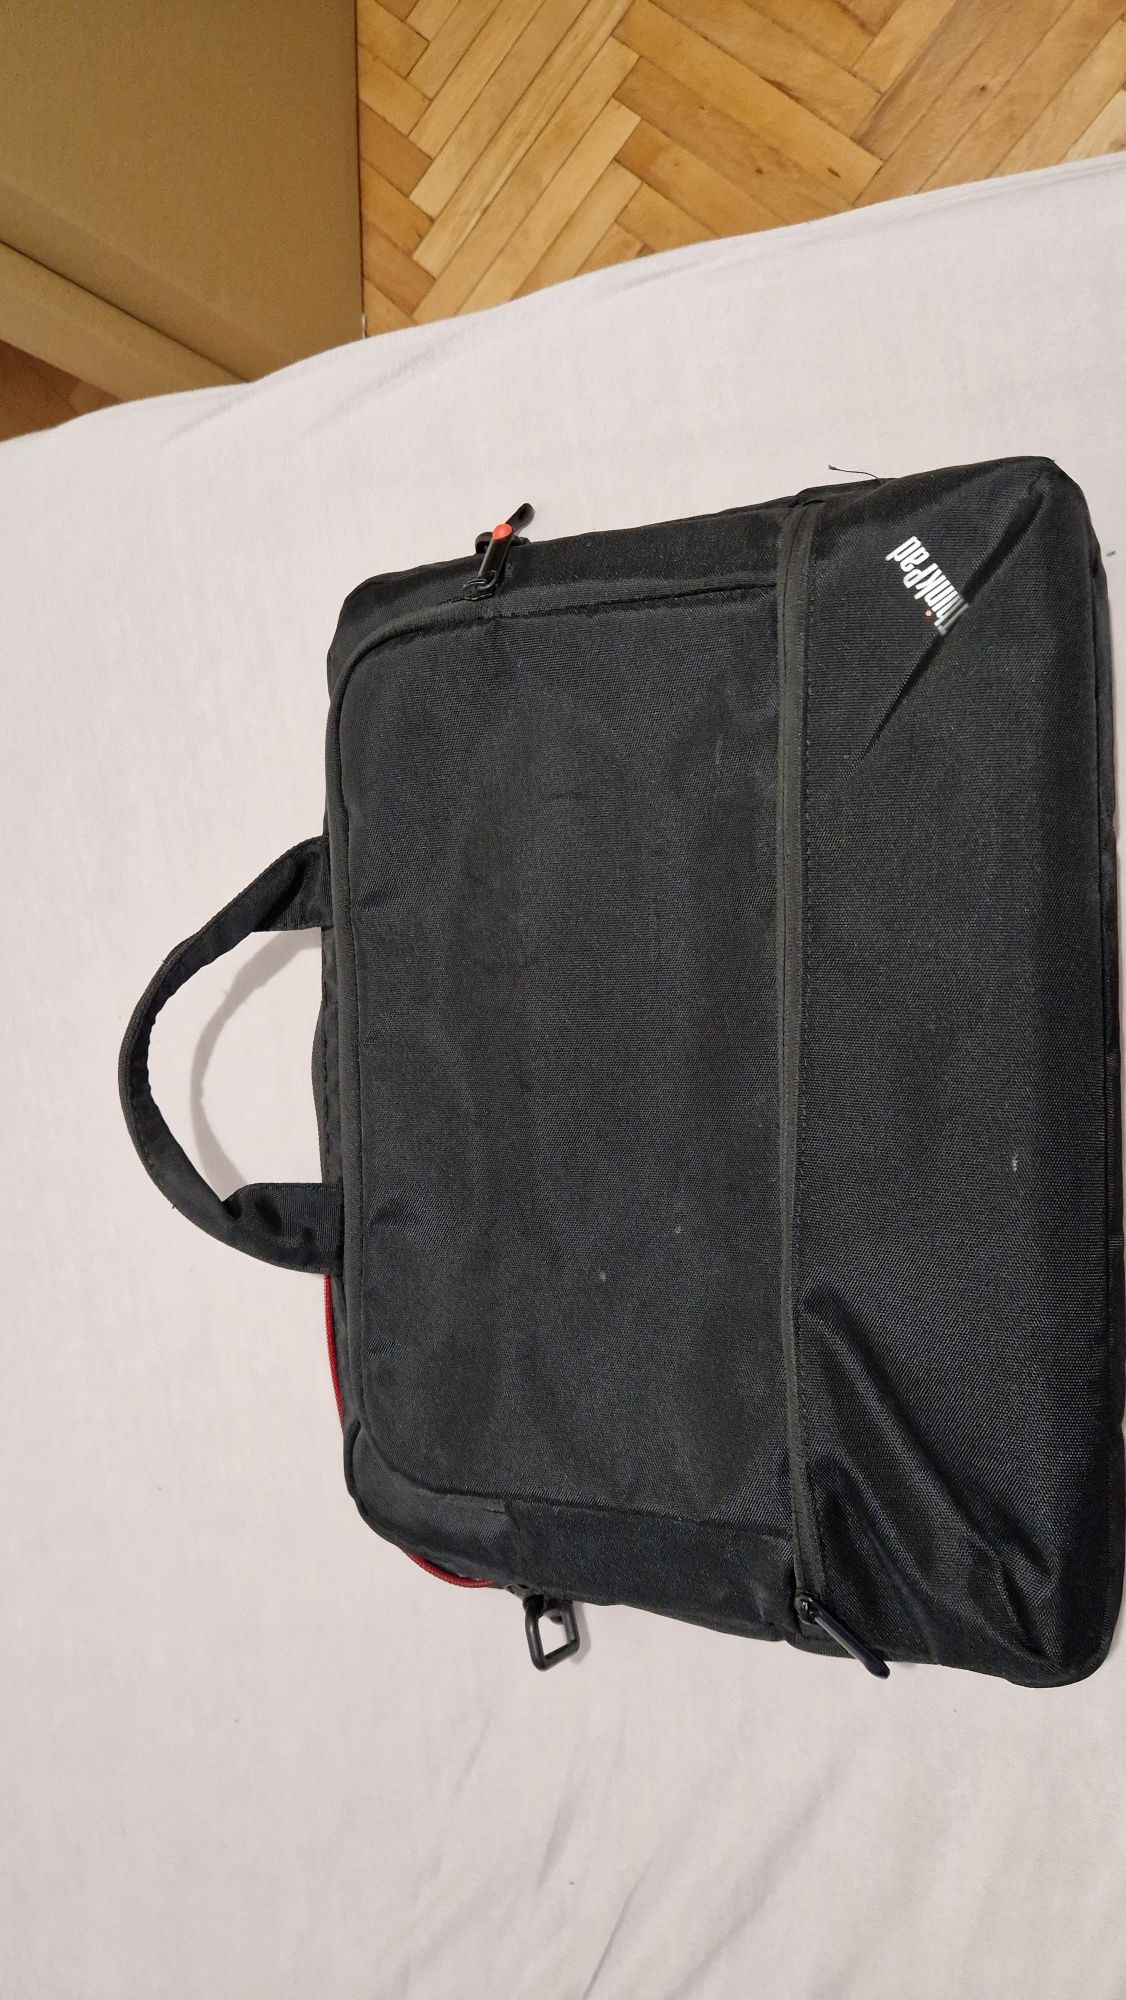 ThinkPad torba na laptopa